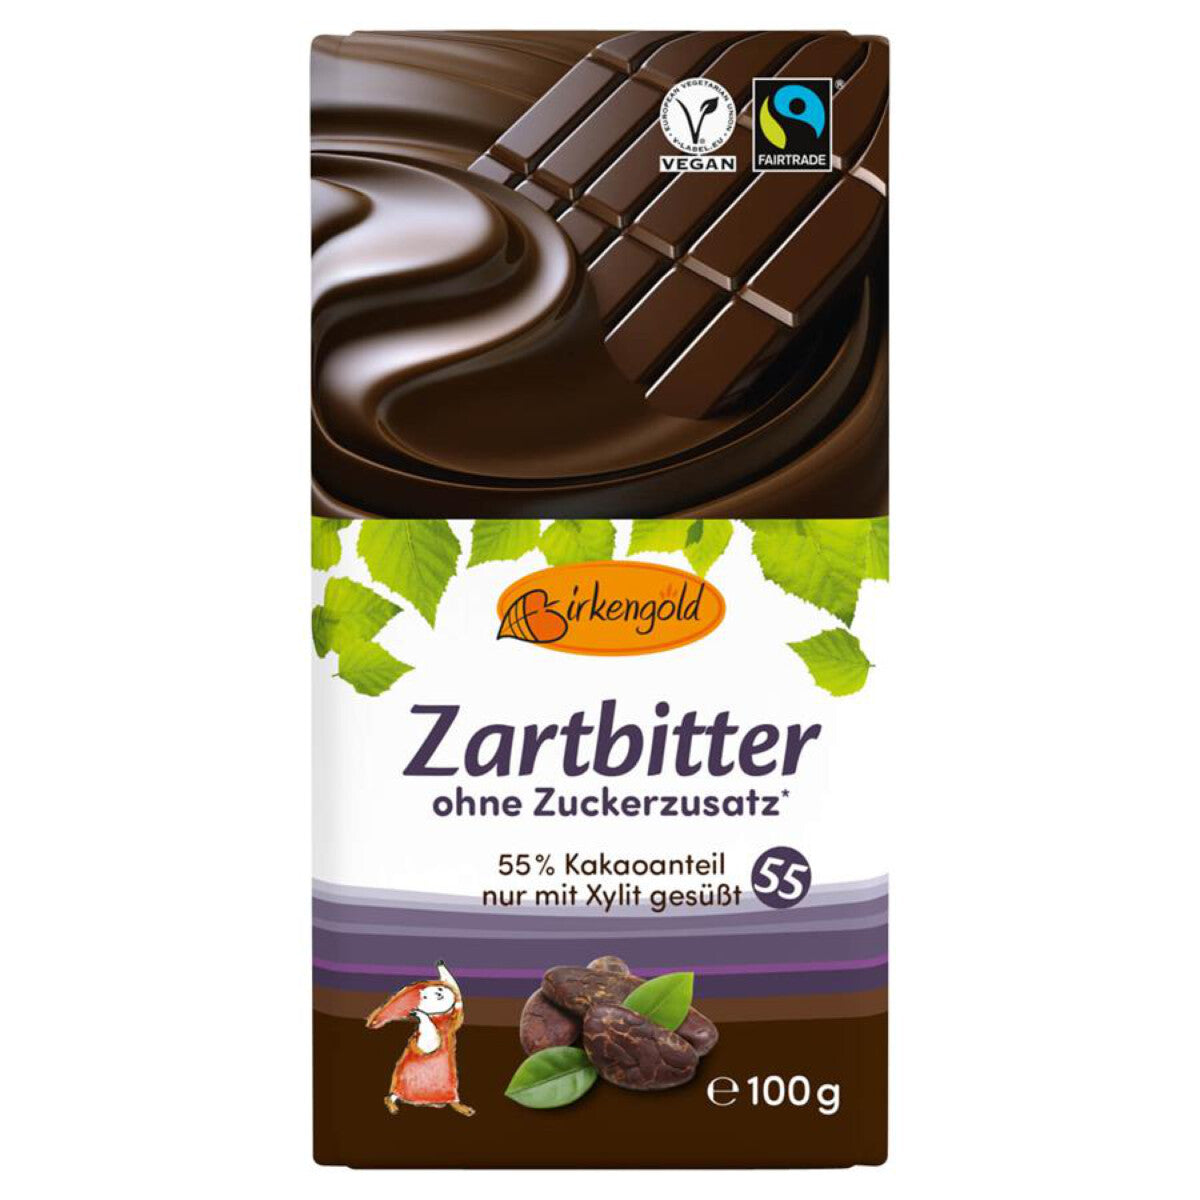 BIRKENGOLD Zartbitter Schokolade 55% - 100 g